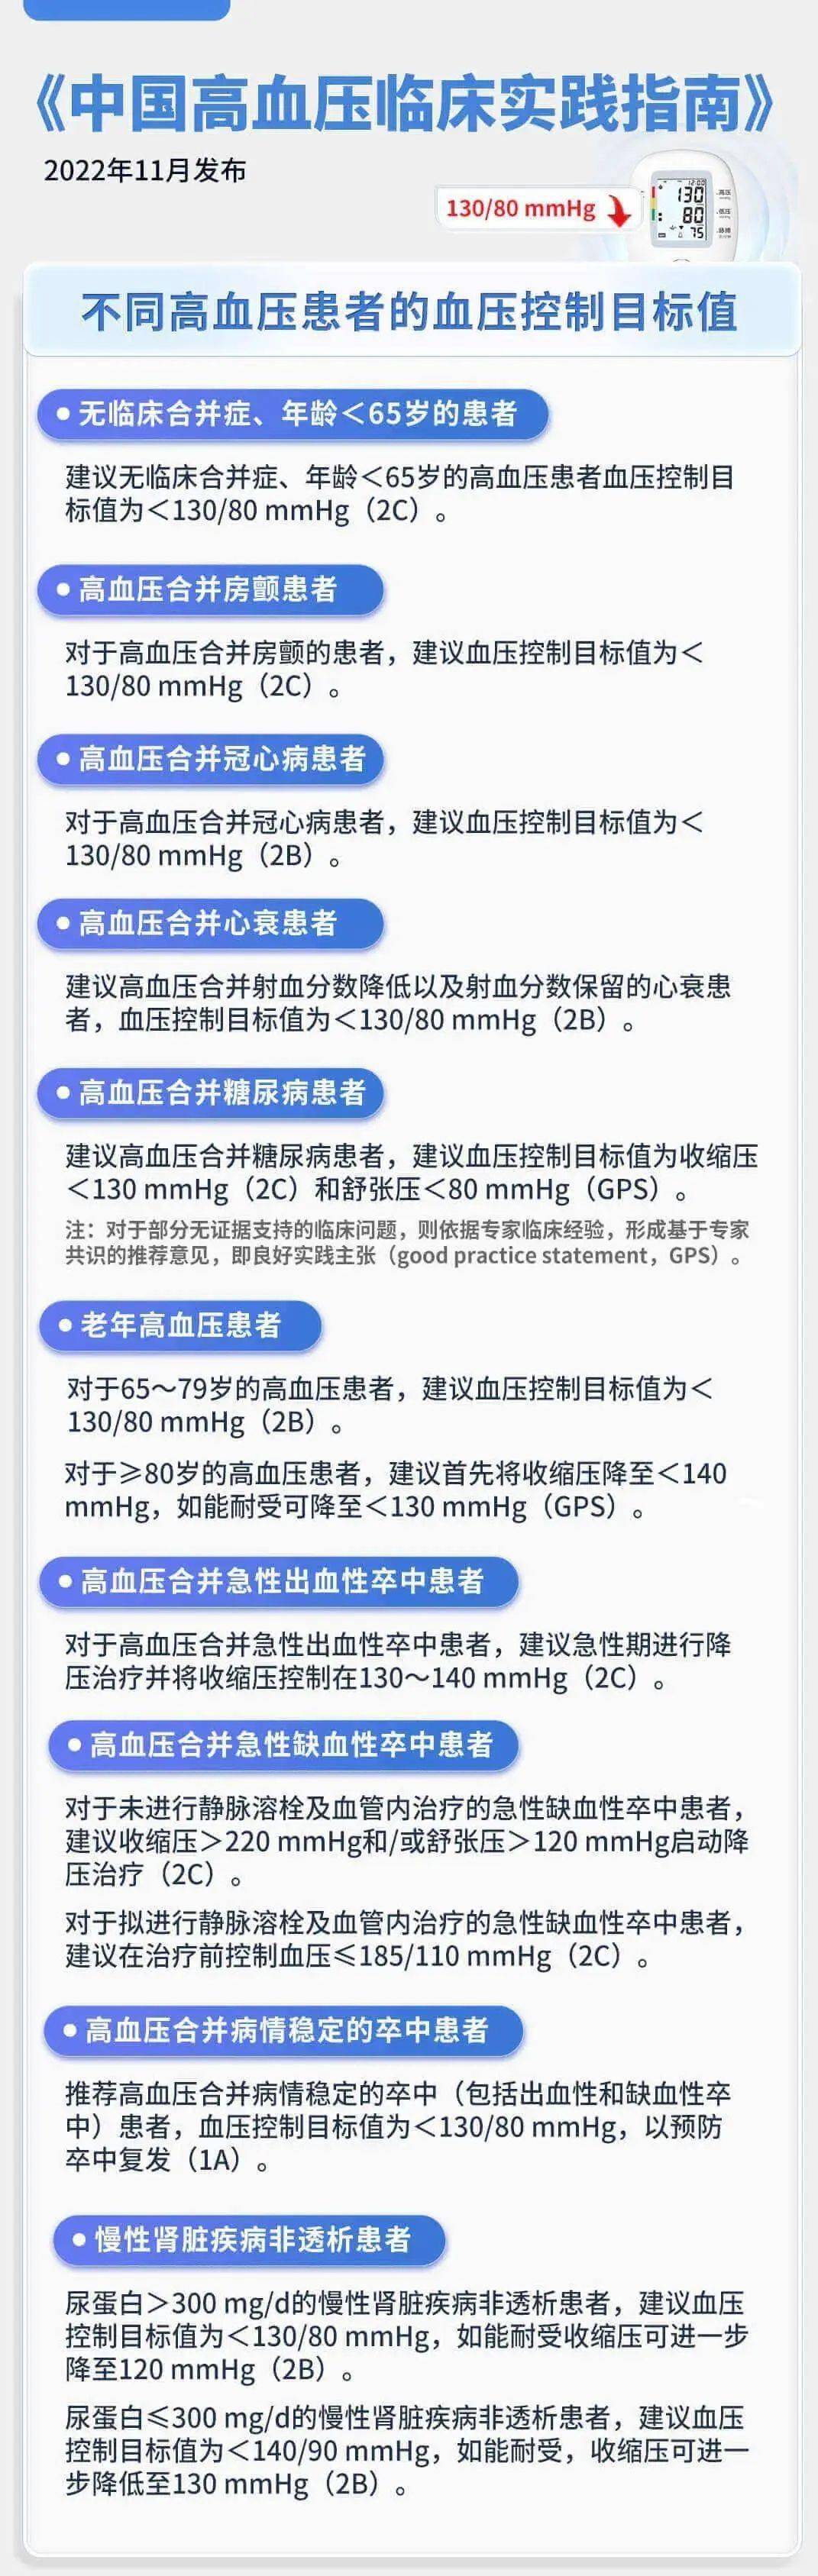 《中国高血压临床实践指南》发布，高血压的诊断标准下调至≥130/80 mmHg